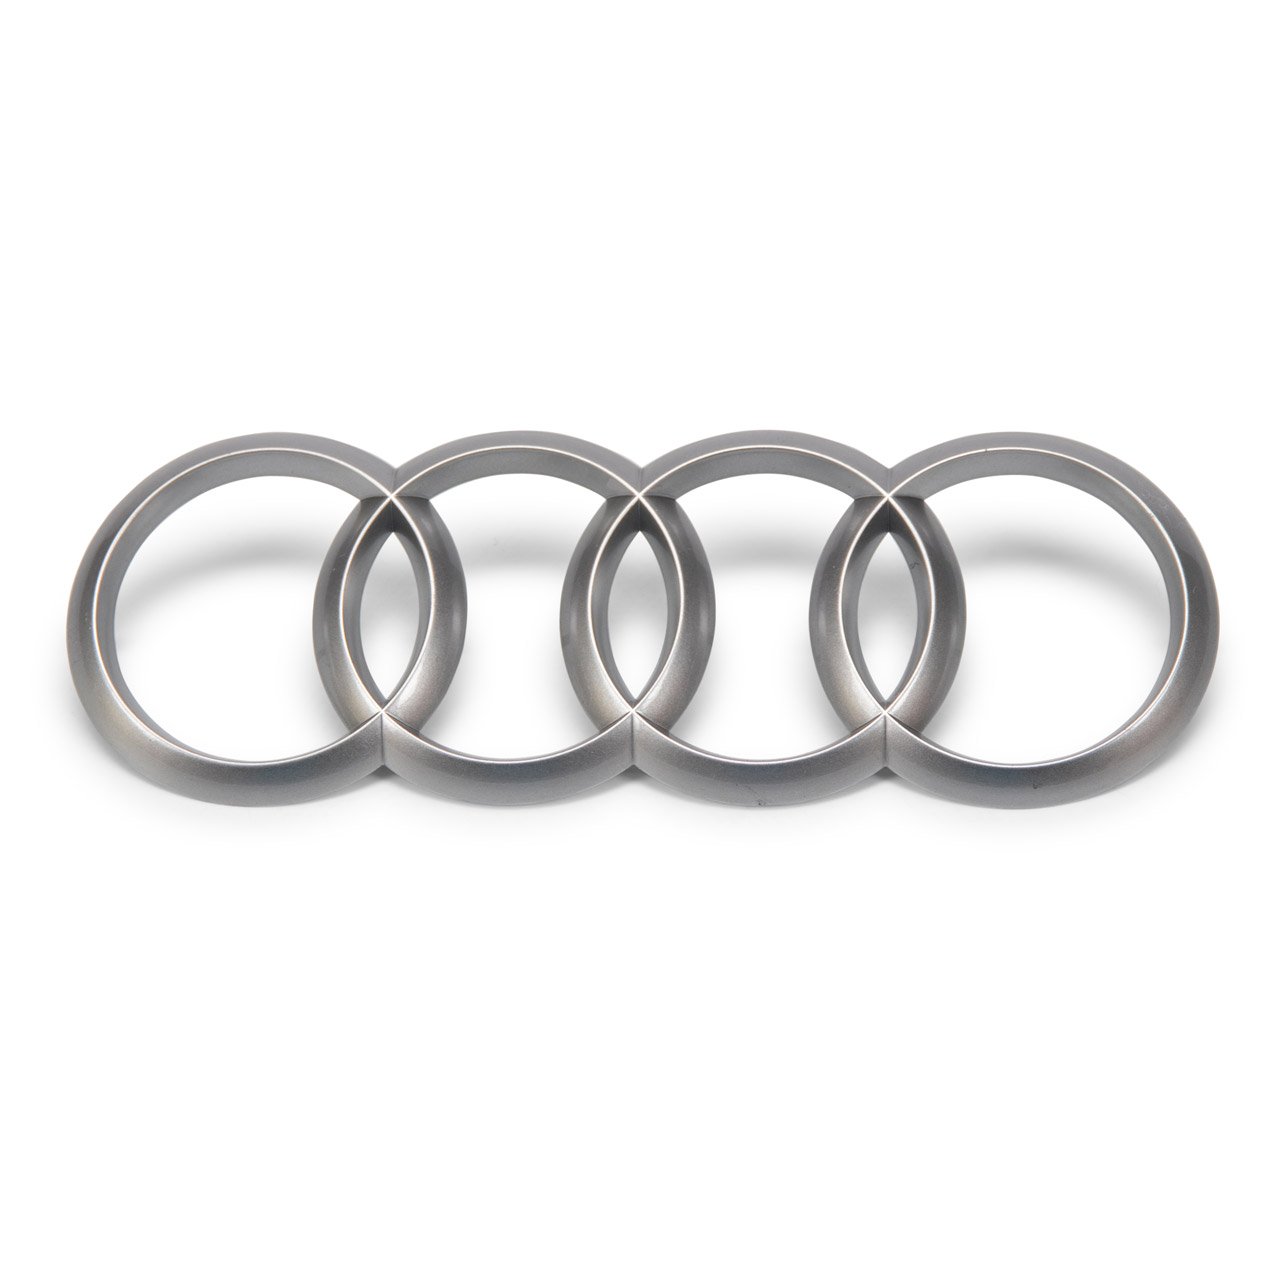 ORIGINAL Audi Emblem Ringe Logo Motorabdeckung A1 A3 A4 A5 A6 A7 A8 Q3 Q5 Q7 4H0103940A